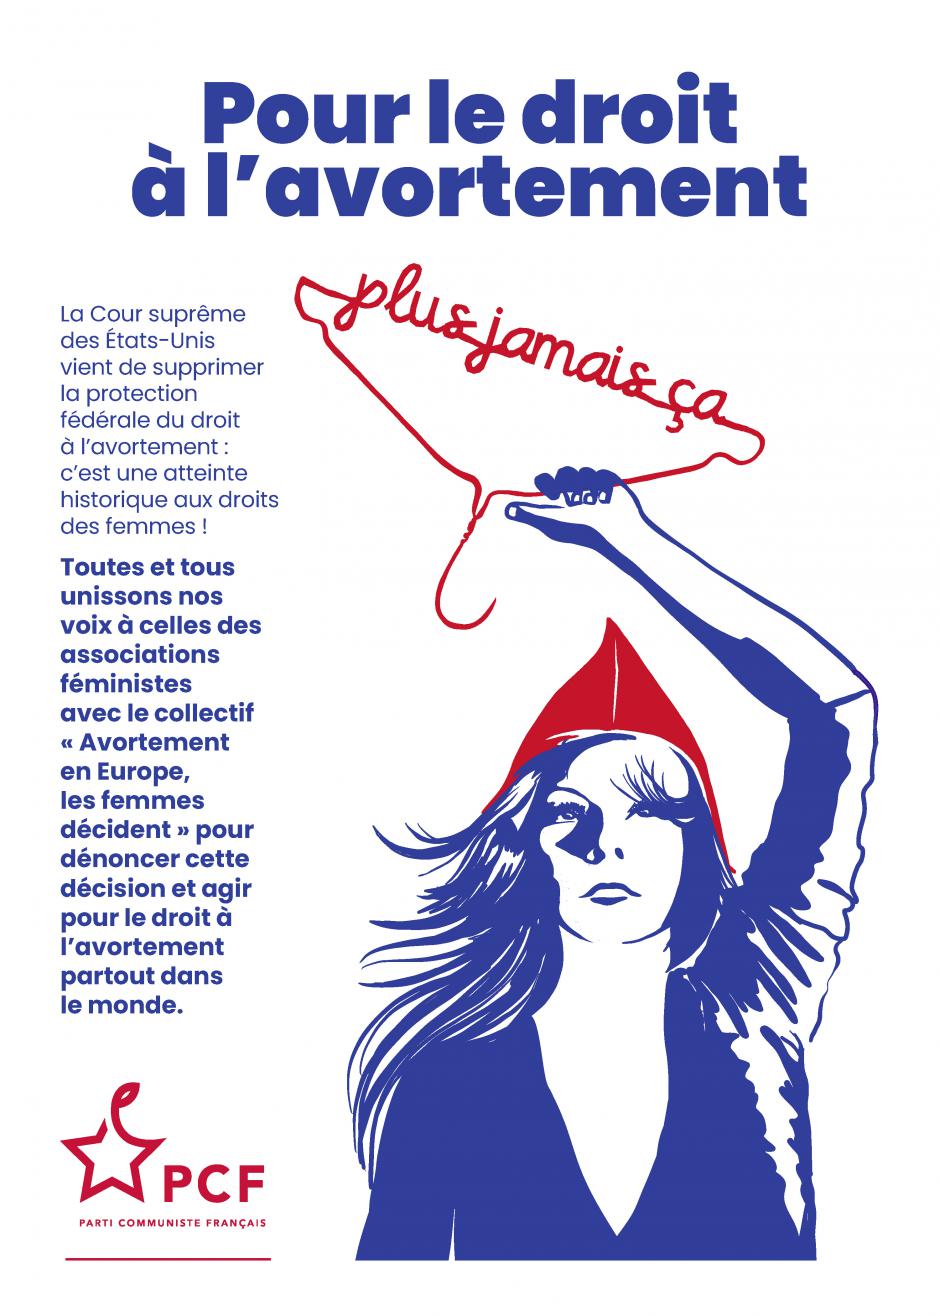 2 juillet, Beauvais - Rassemblement pour le droit à l'avortement aux États-Unis et dans le monde